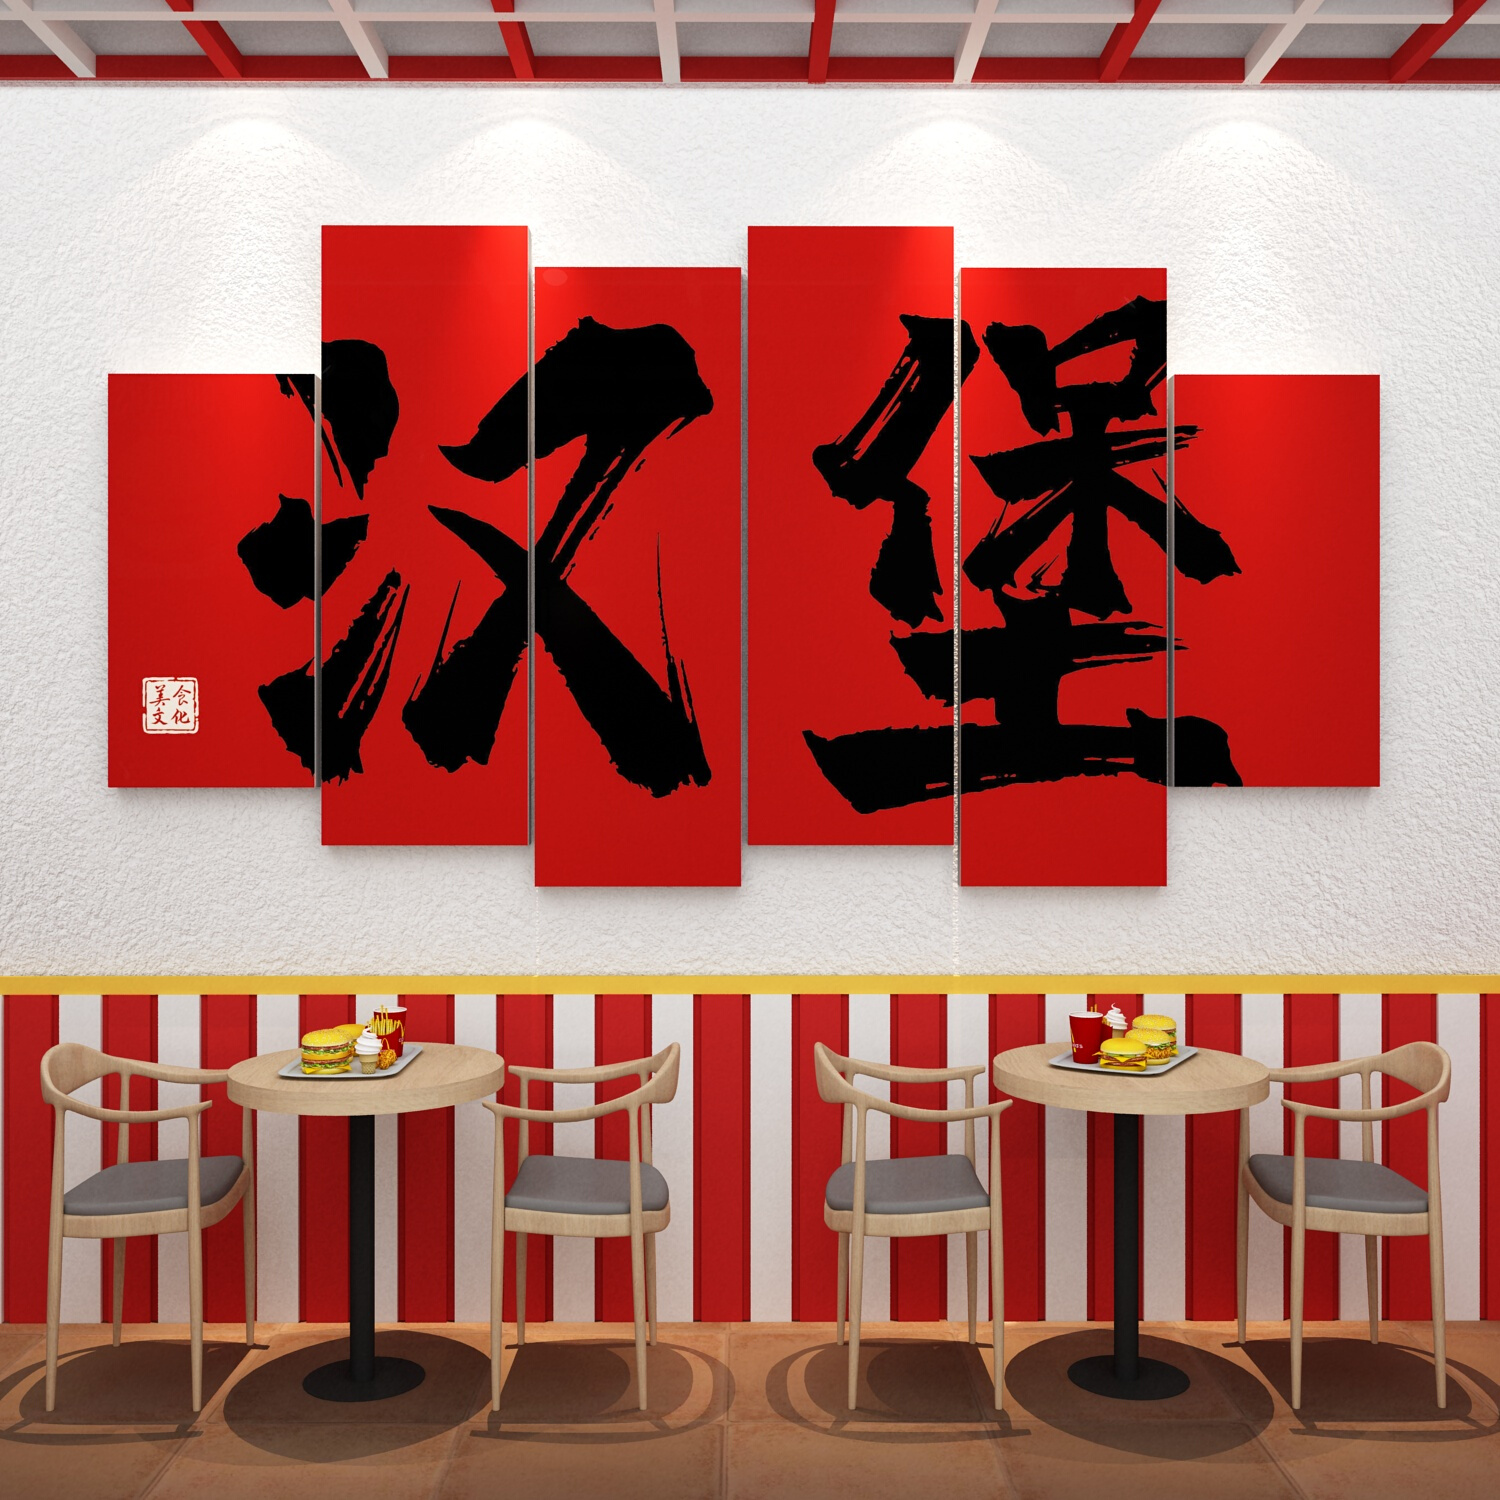 网红汉堡炸鸡店厅背景墙面门创意装饰品小吃奶茶场景布置壁纸贴画